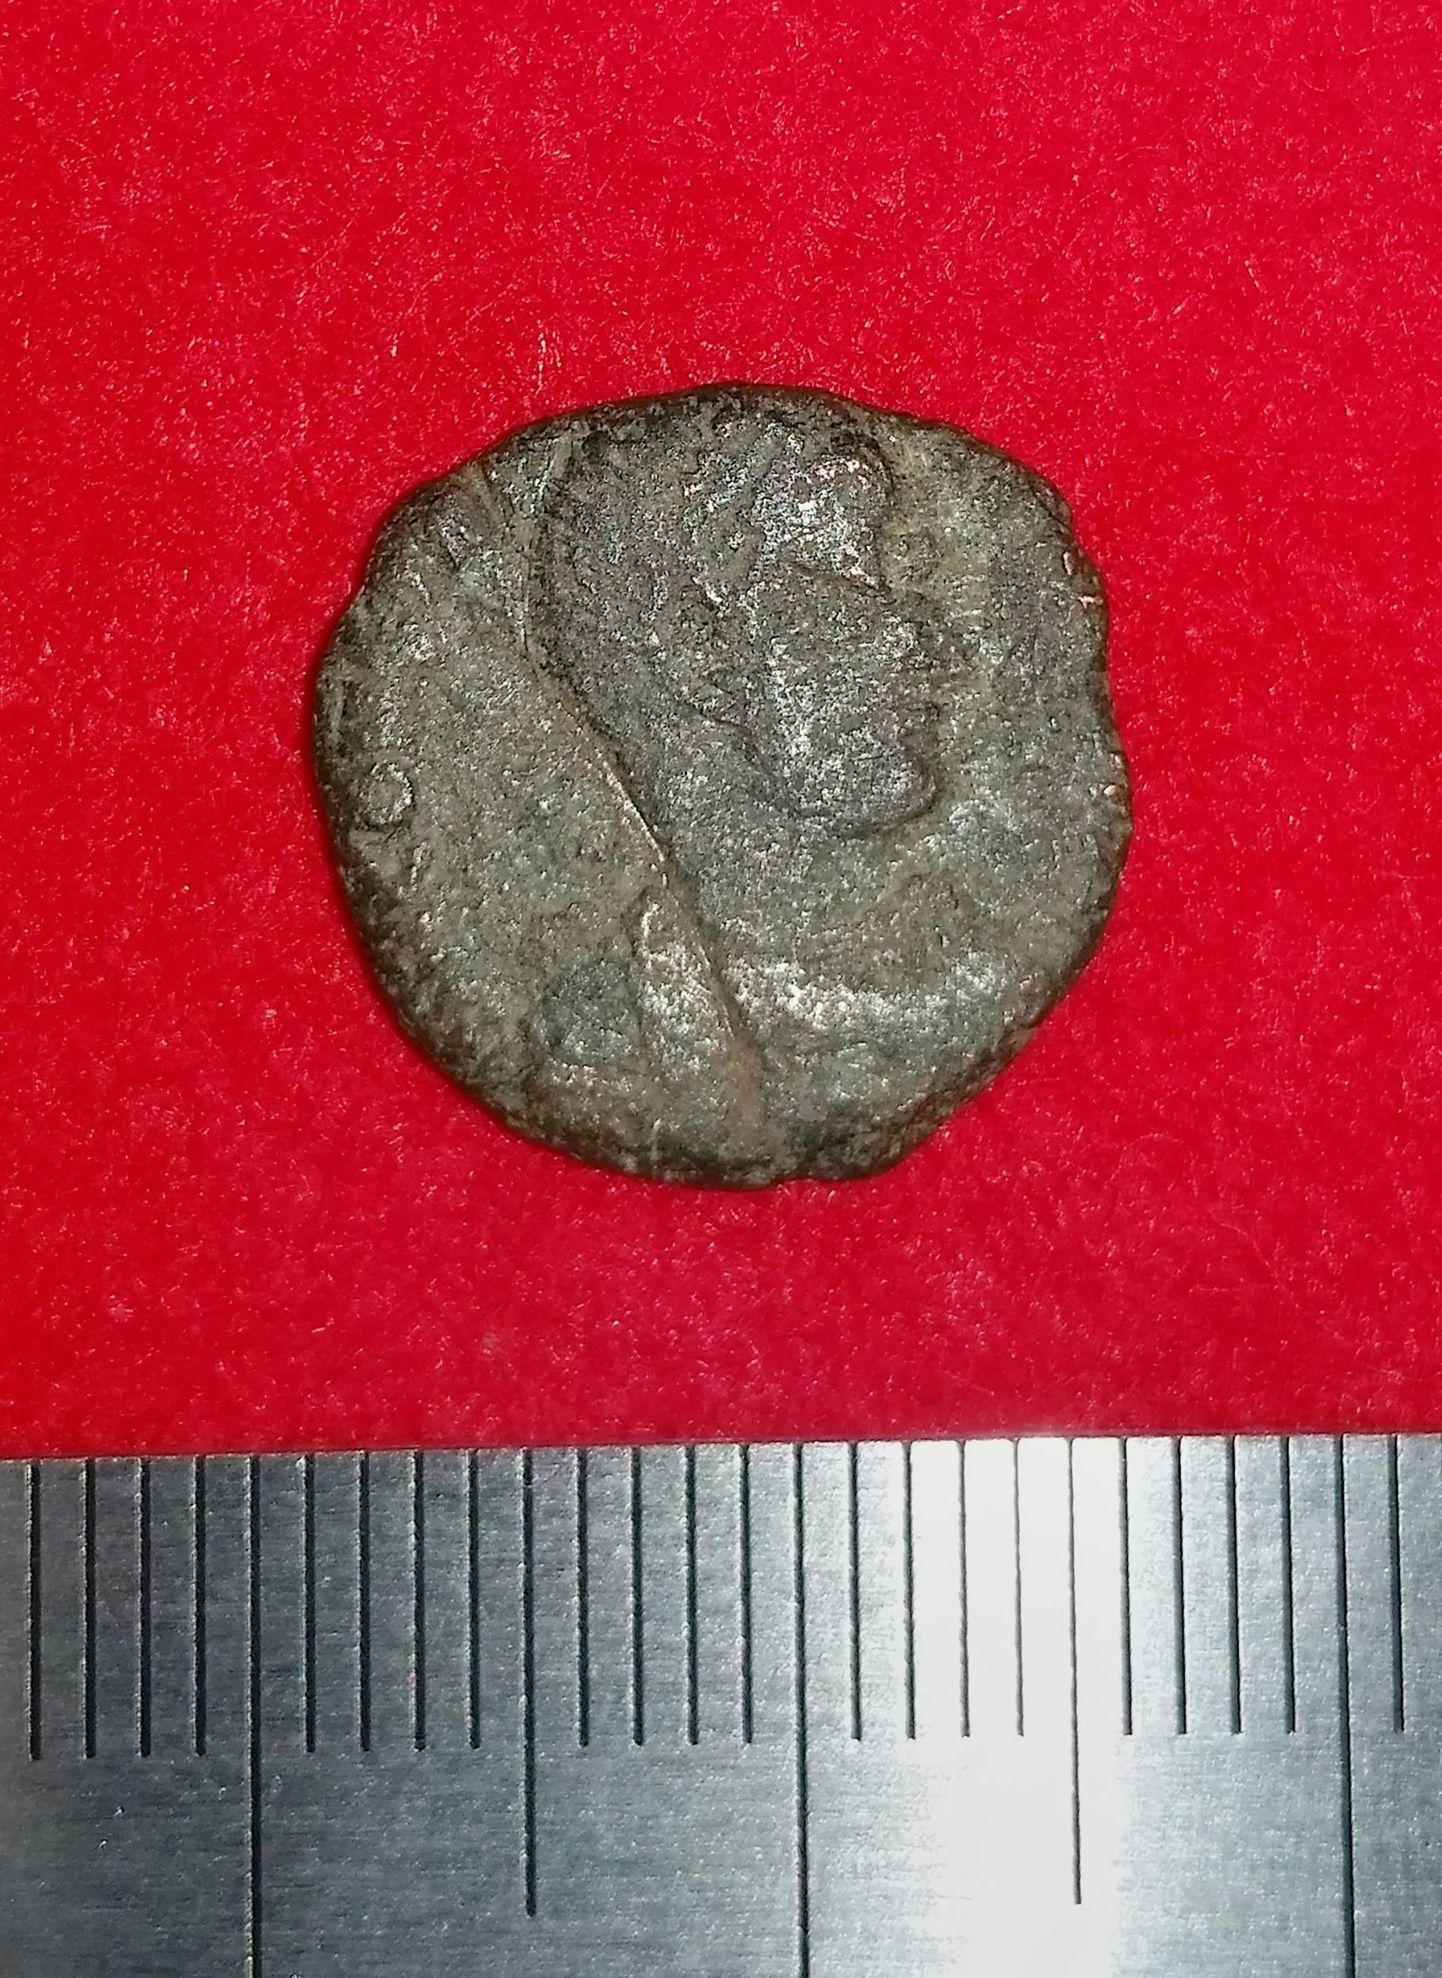 Katsureni kindlusest leitud münt